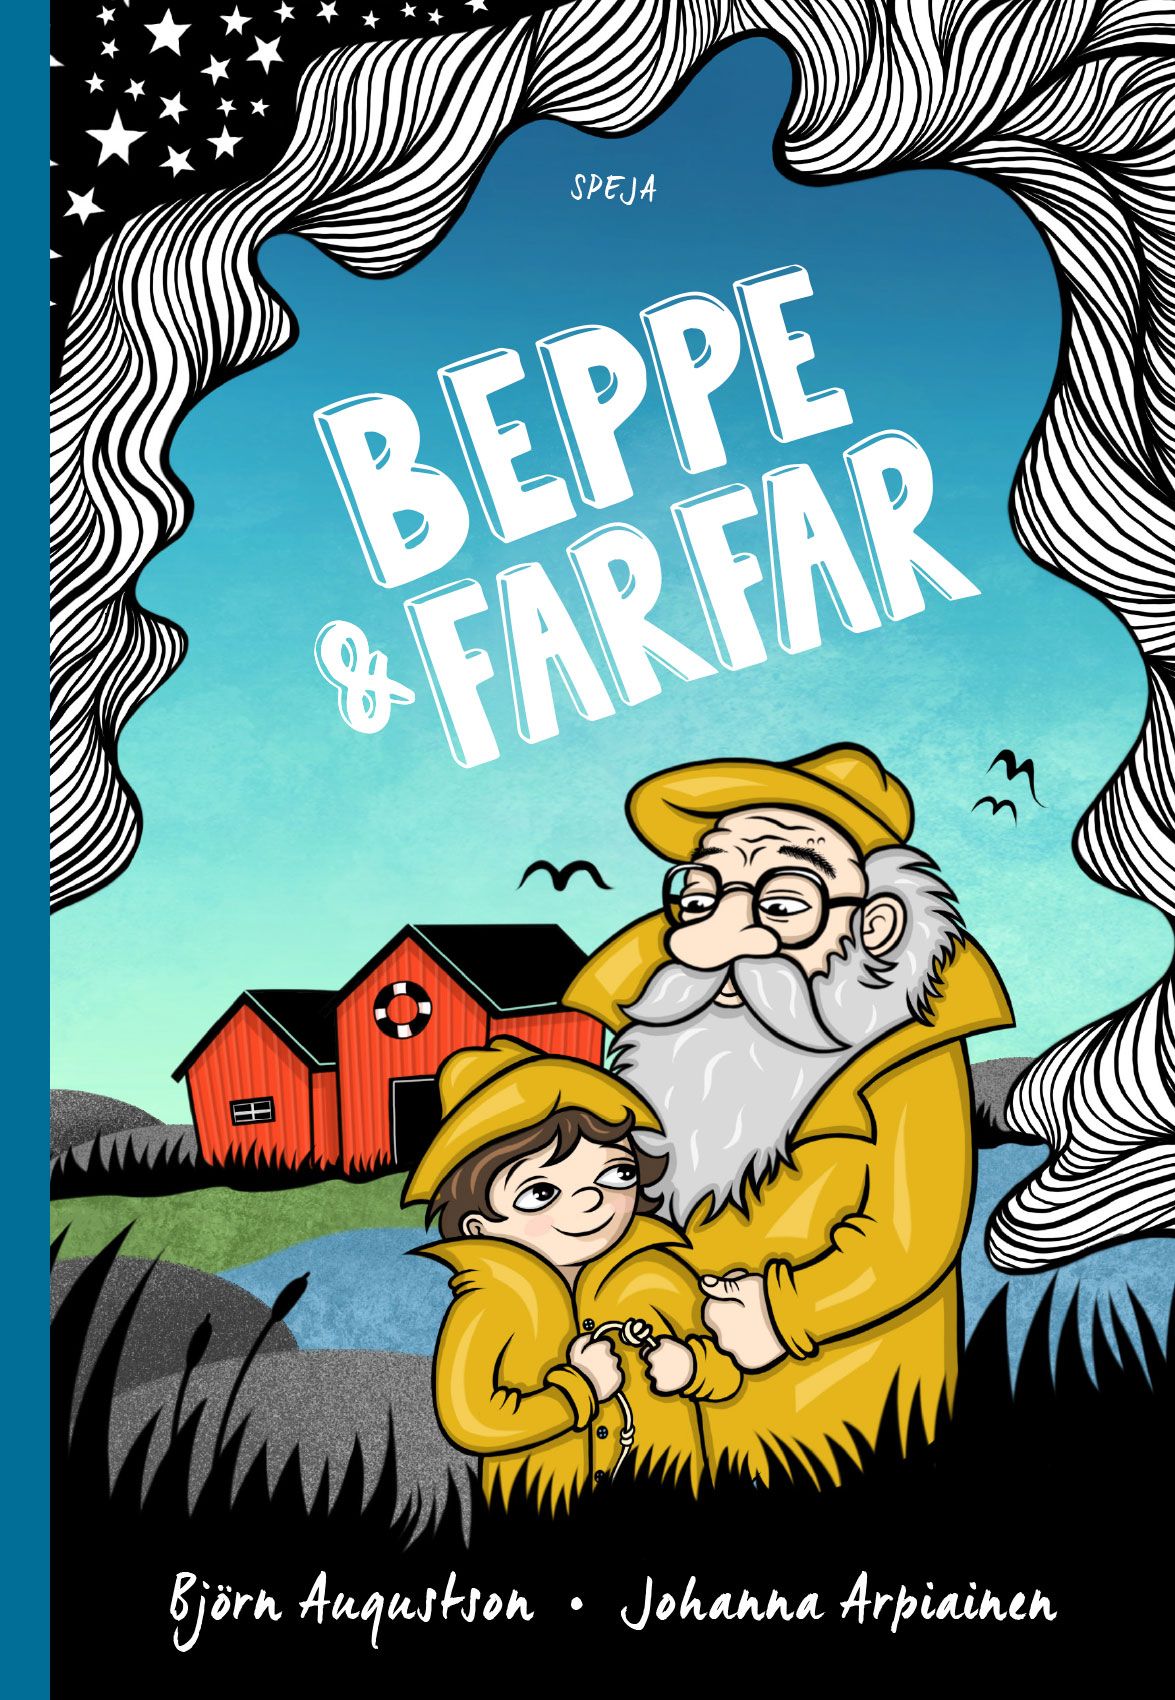 Beppe & Farfar, ljudbok av Björn Augustson